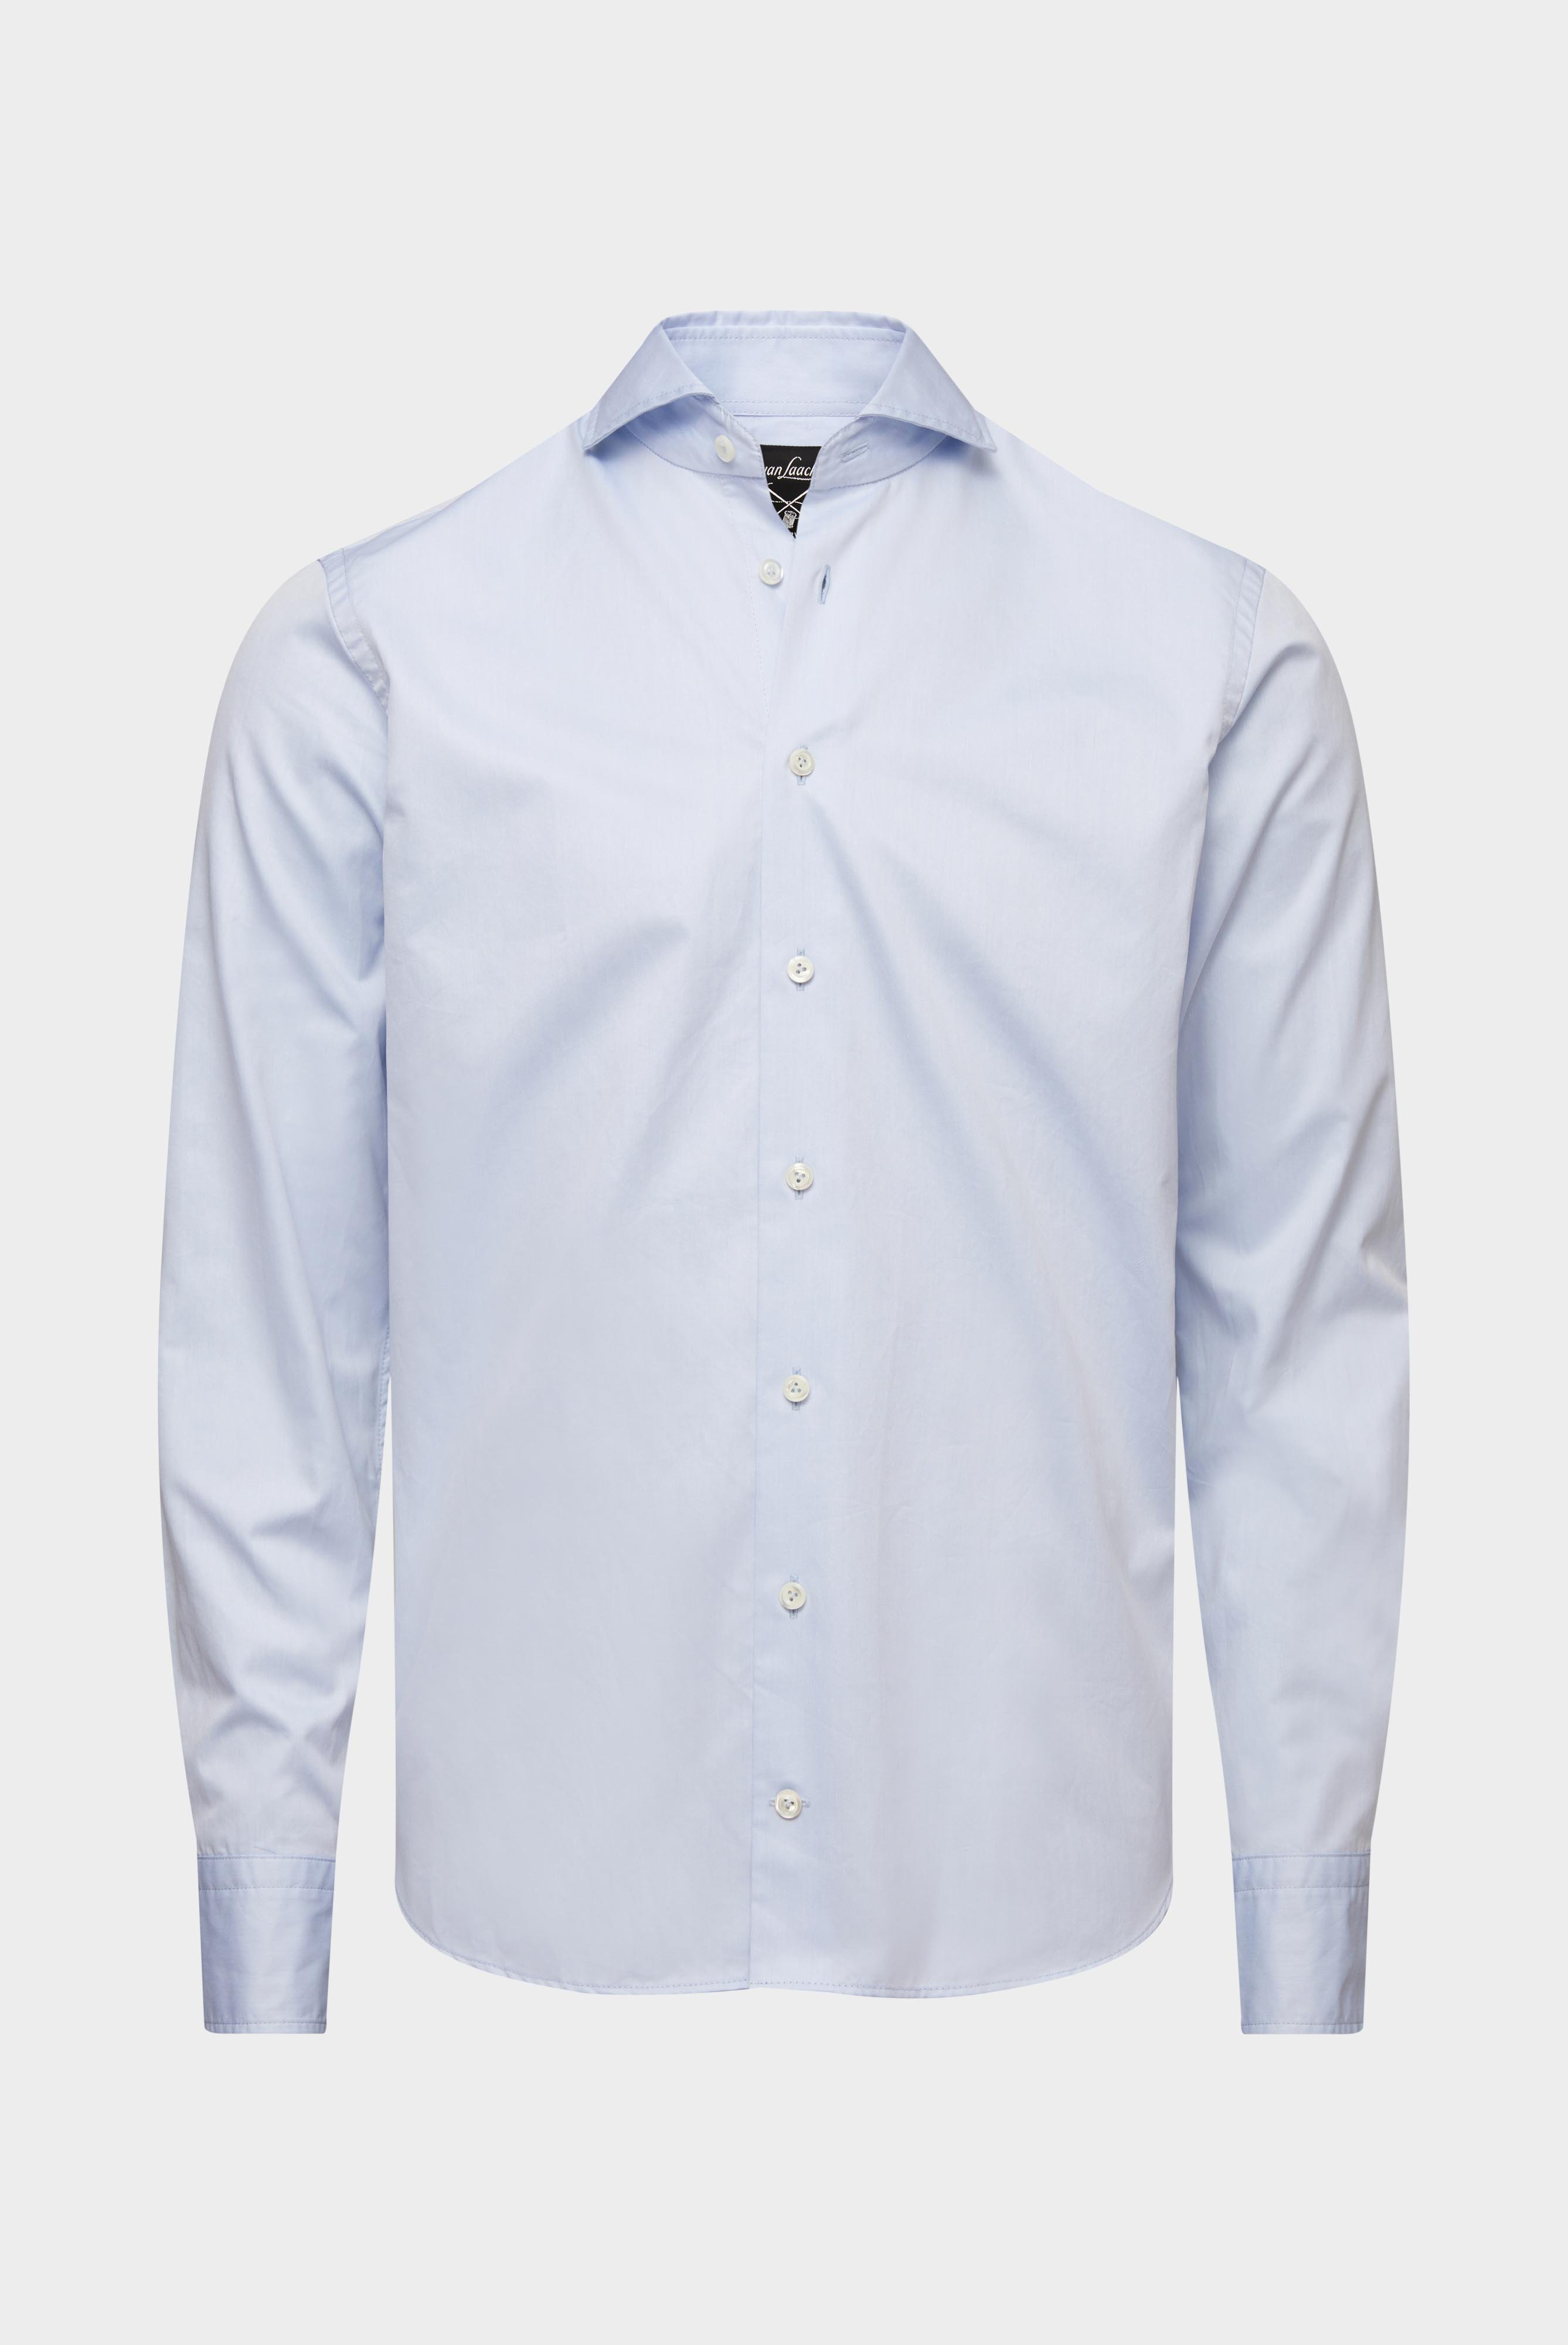 Business Shirts+Soft Washed Fine Twill Shirt+20.2015.EB.160708.720.37